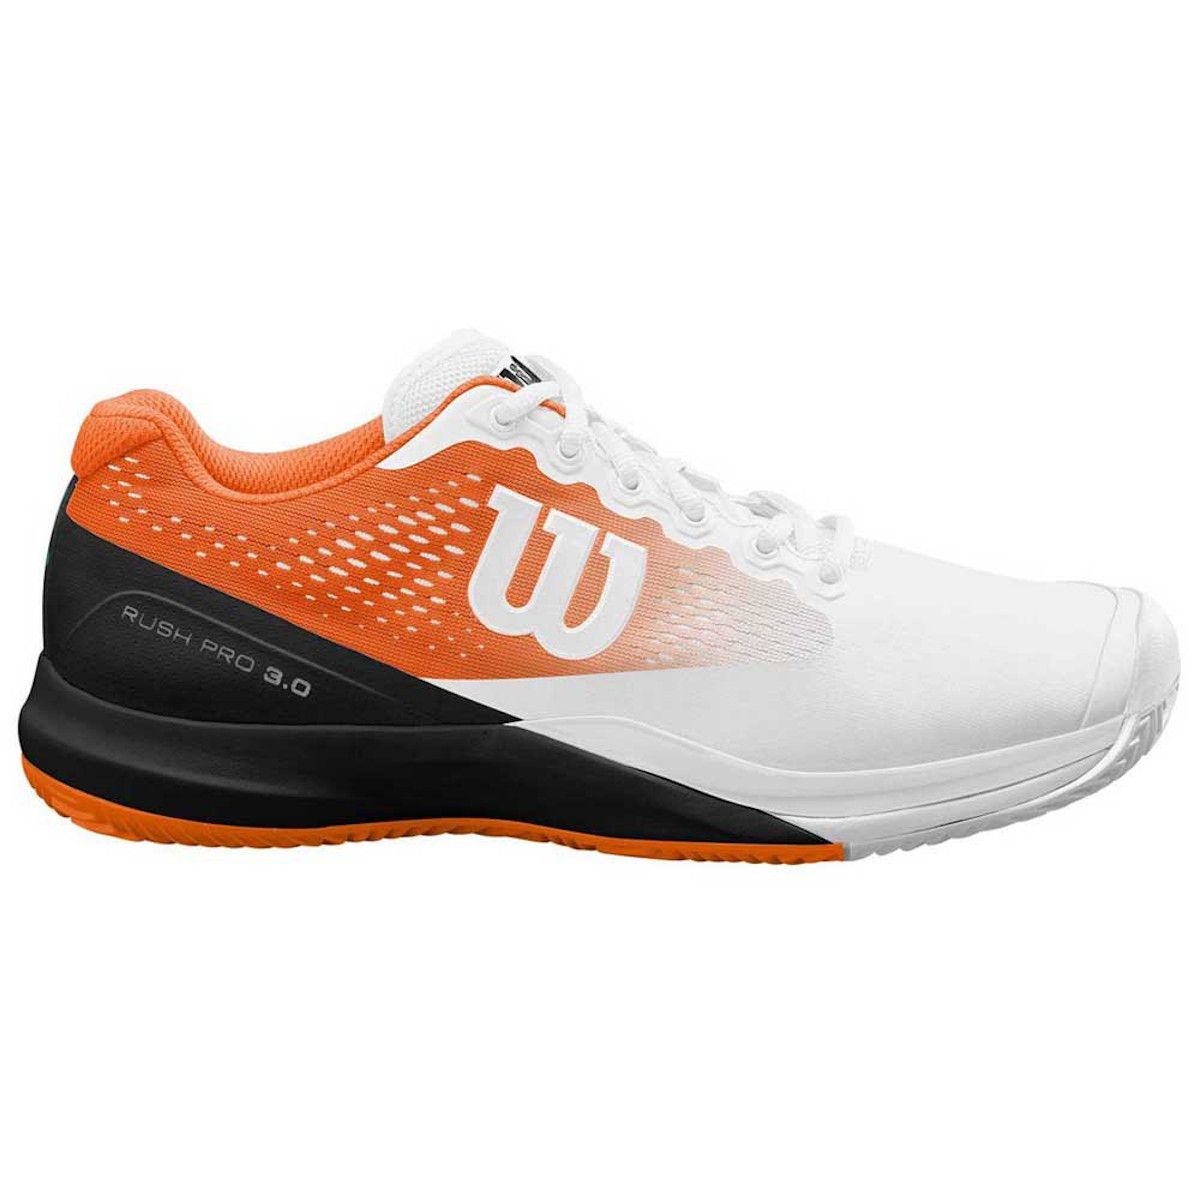 Wilson Rush Pro 3.0 Paris Men's Tennis Shoes WRS326870